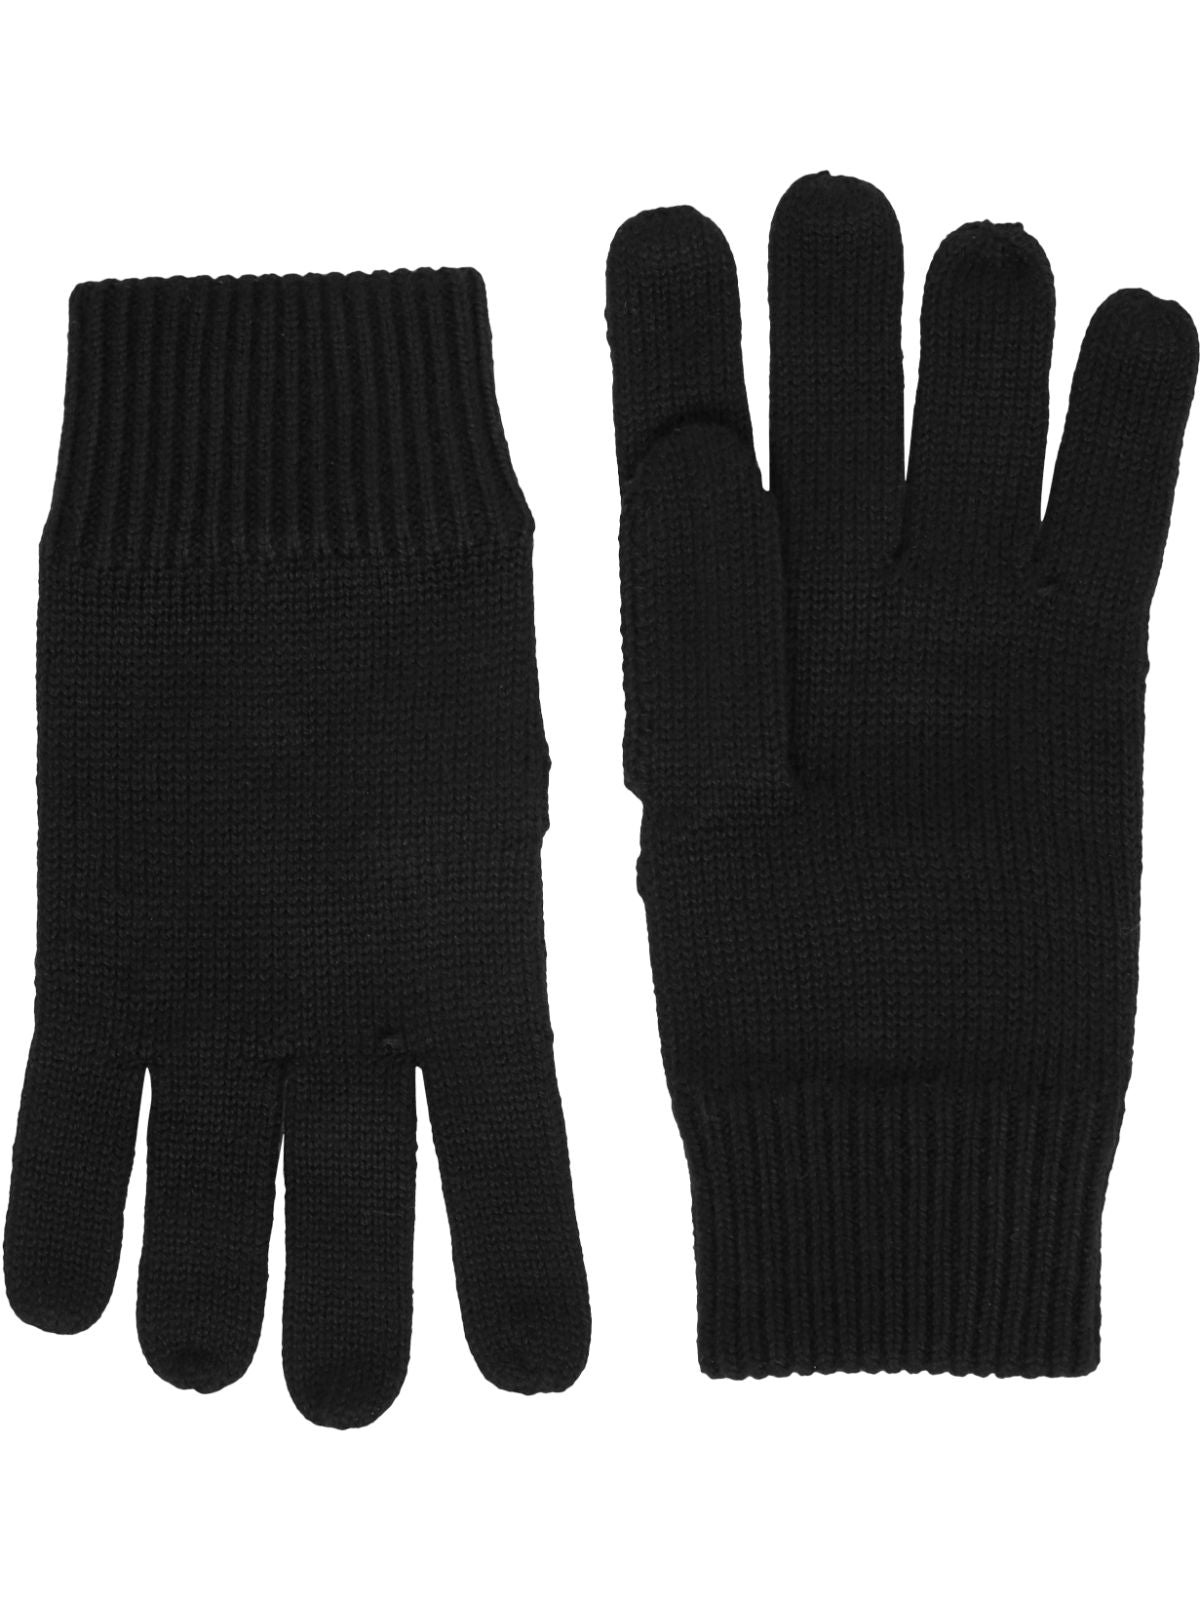 Flag Knitted Gloves